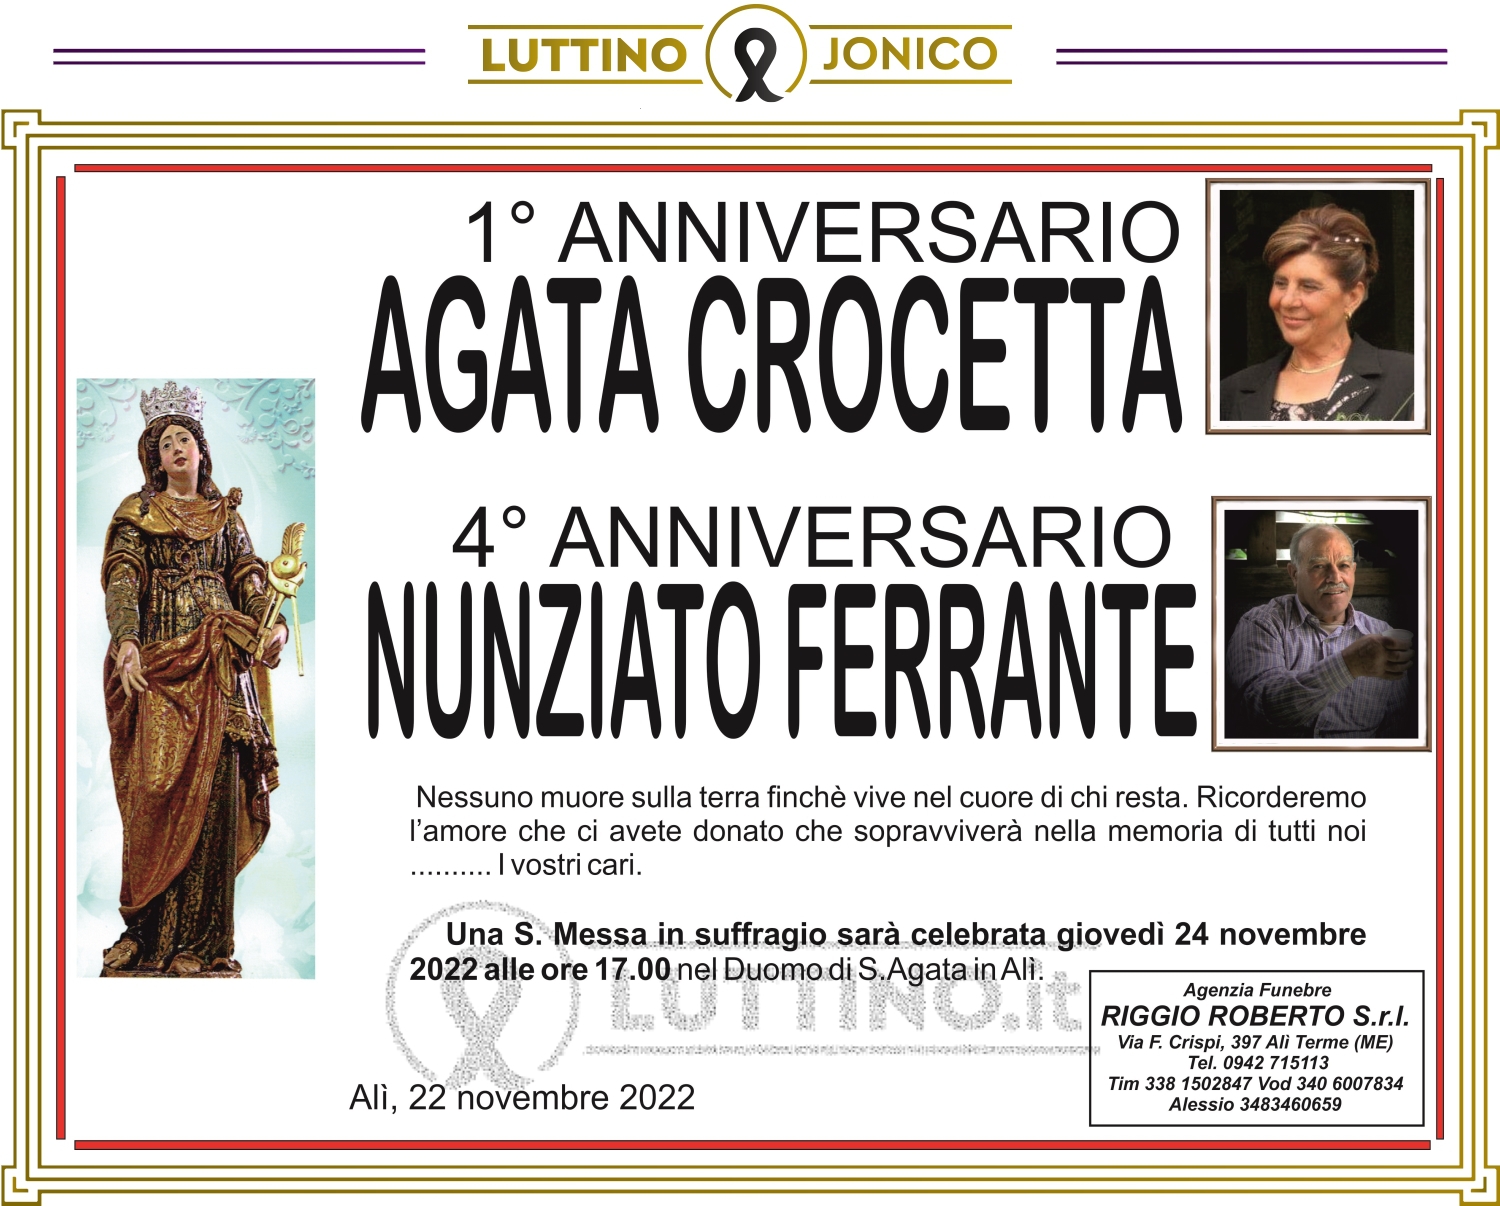 Agata Crocetta e Nunziato Ferrante